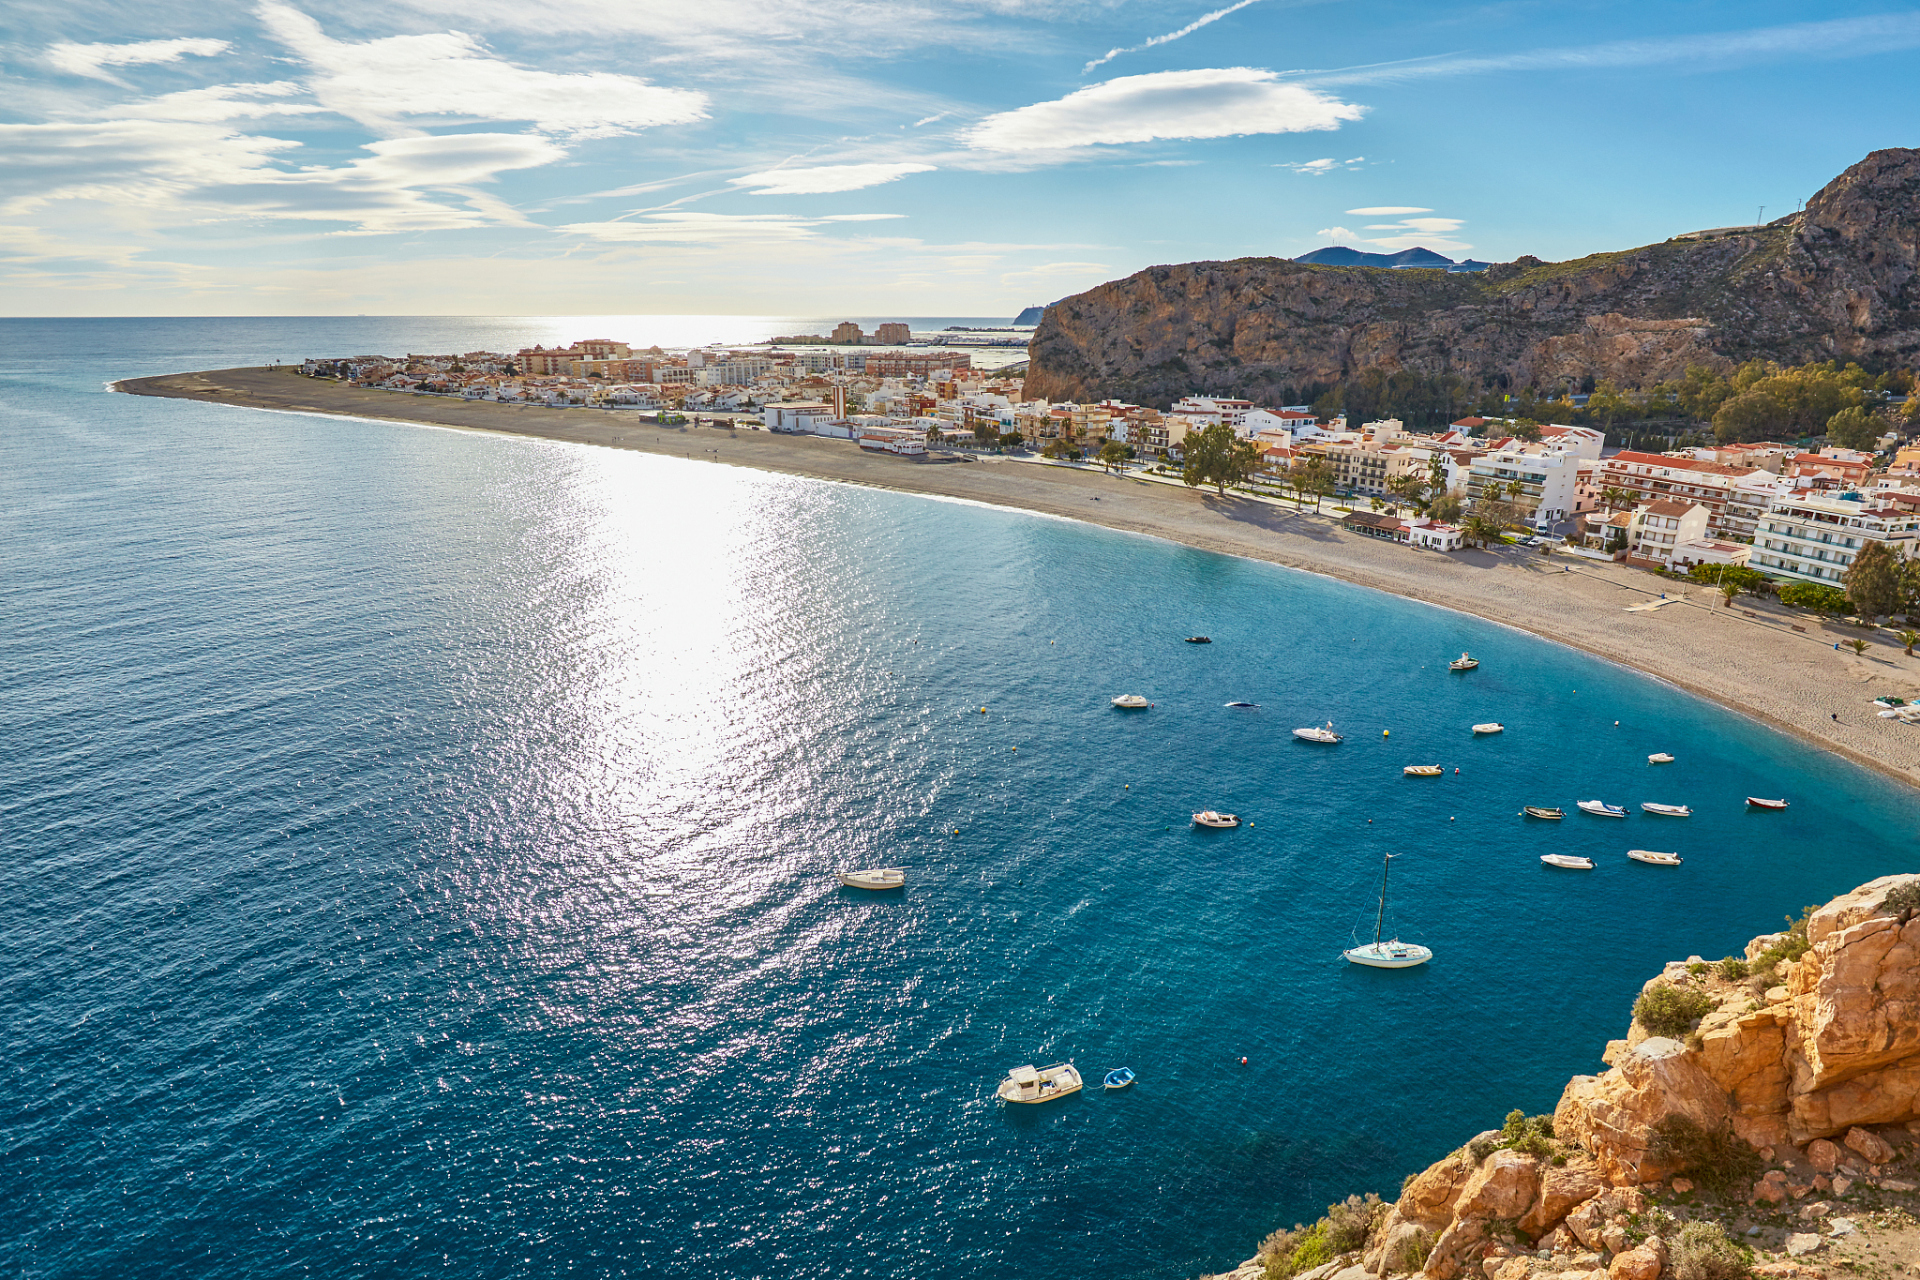 以阳光沙滩著称的西班牙太阳海岸2006年接待了900多万游客,成为欧洲